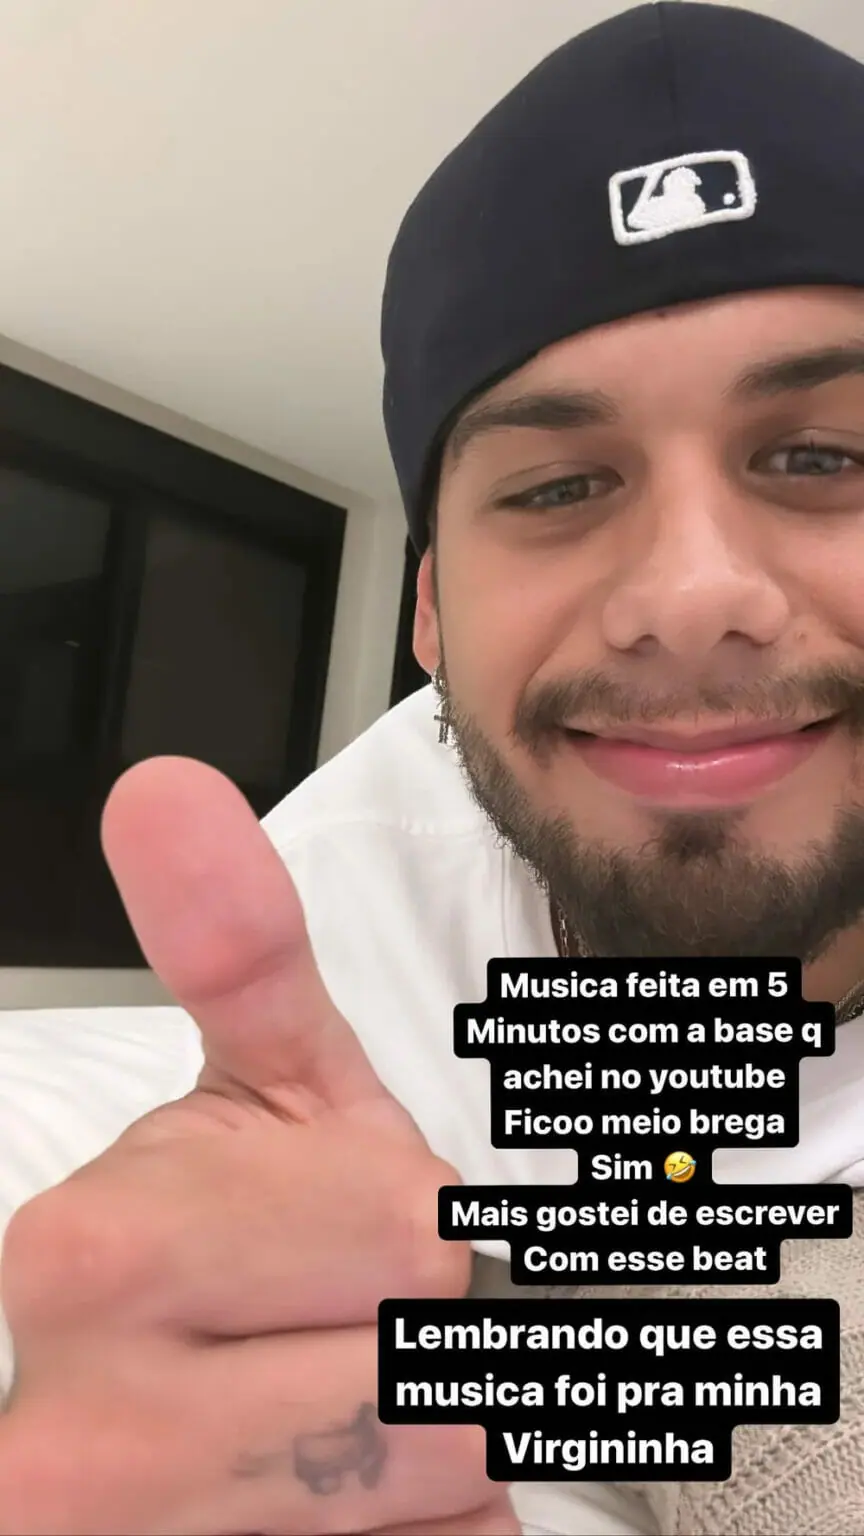 sabiaspalavras.com - Zé Felipe vira motivo de piada depois de fazer rap em resposta à polêmica com Evaristo Costa